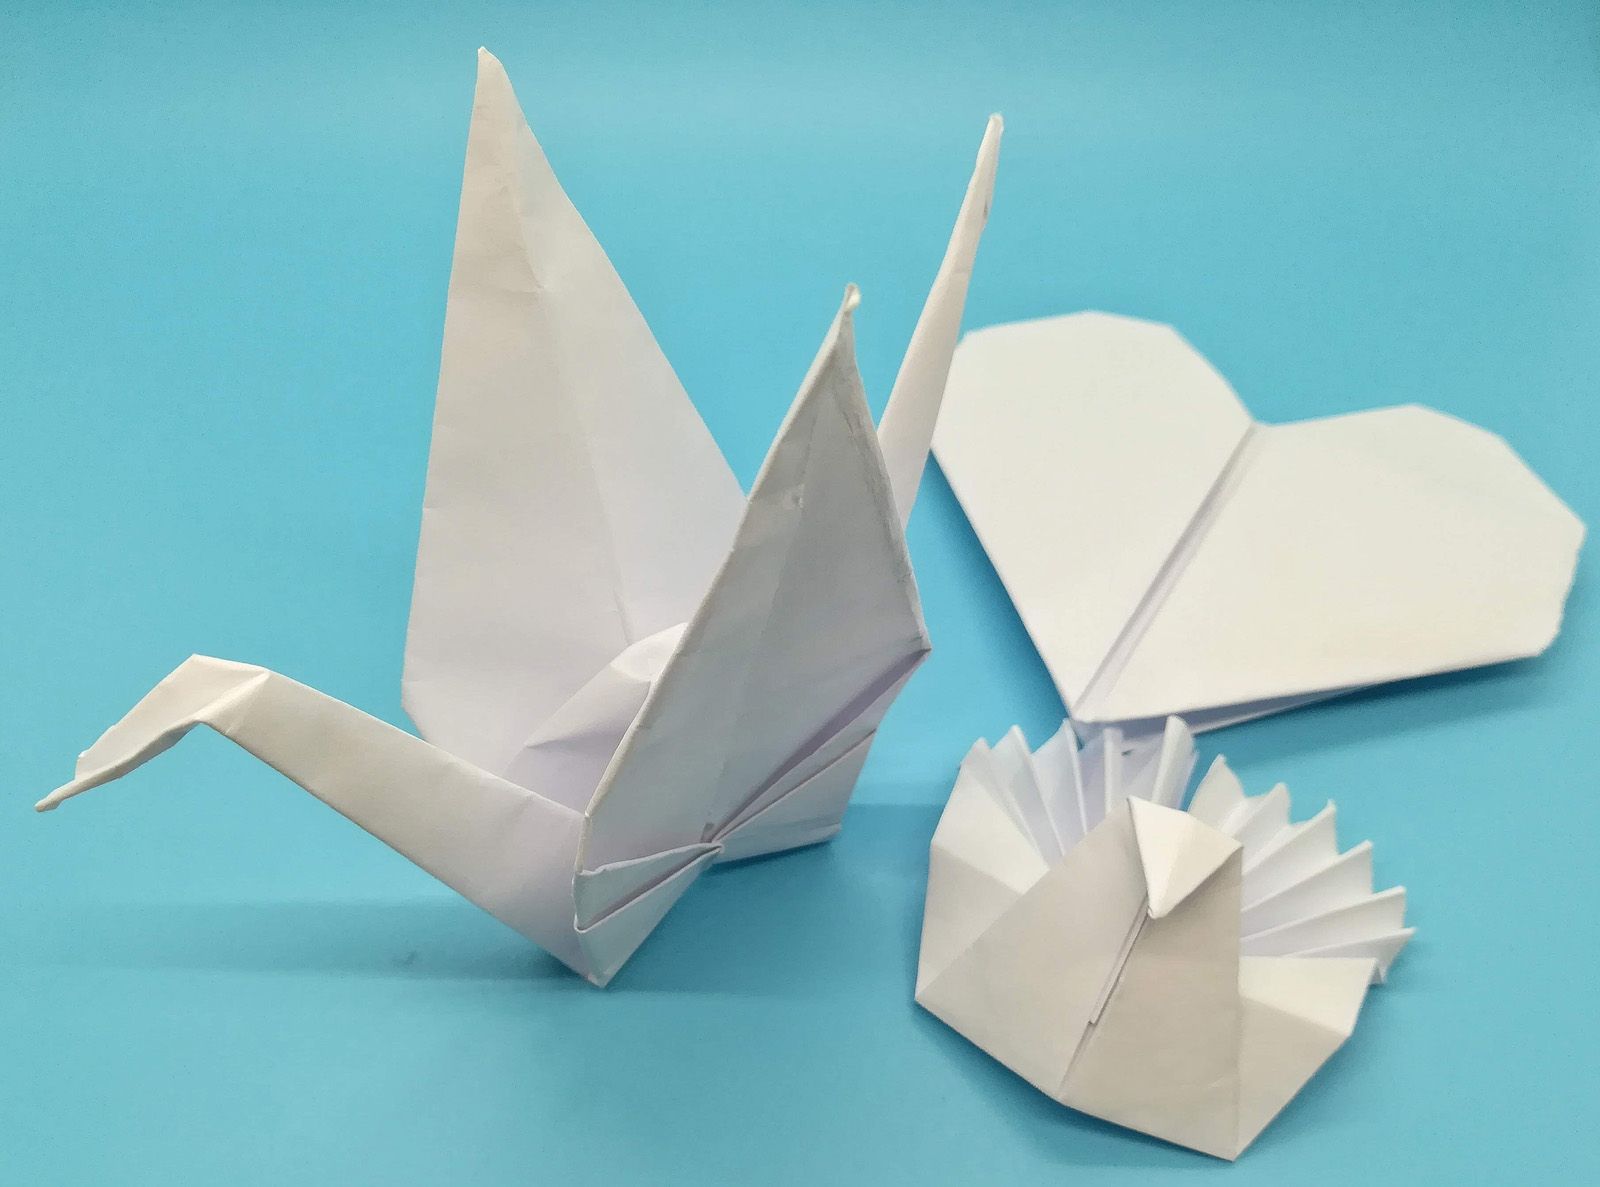 Origami o más que hacer figuras con papel